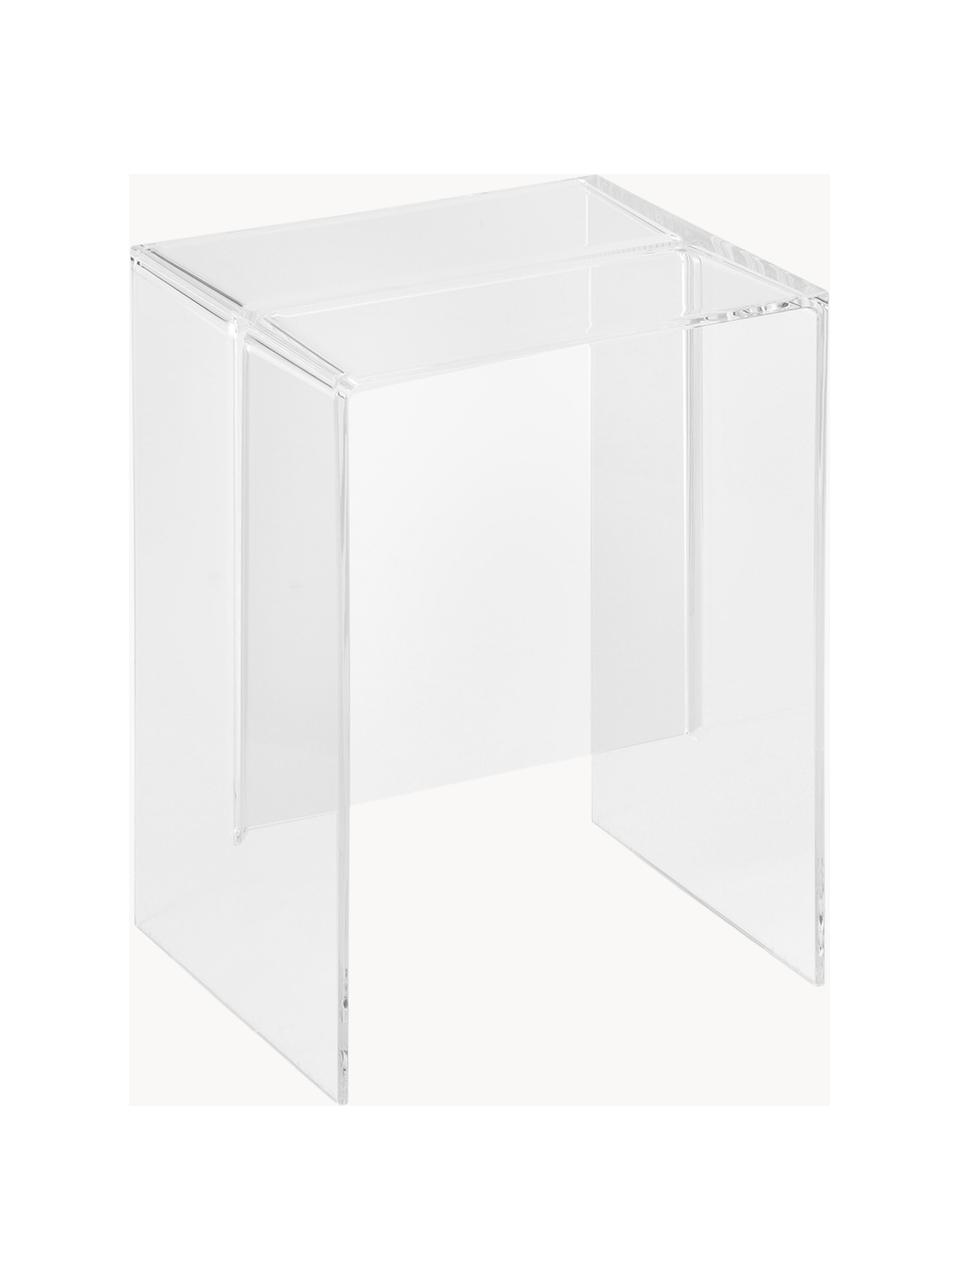 Stolik pomocniczy Max-Beam, Tworzywo sztuczne, Transparentny, S 33 x W 47 cm